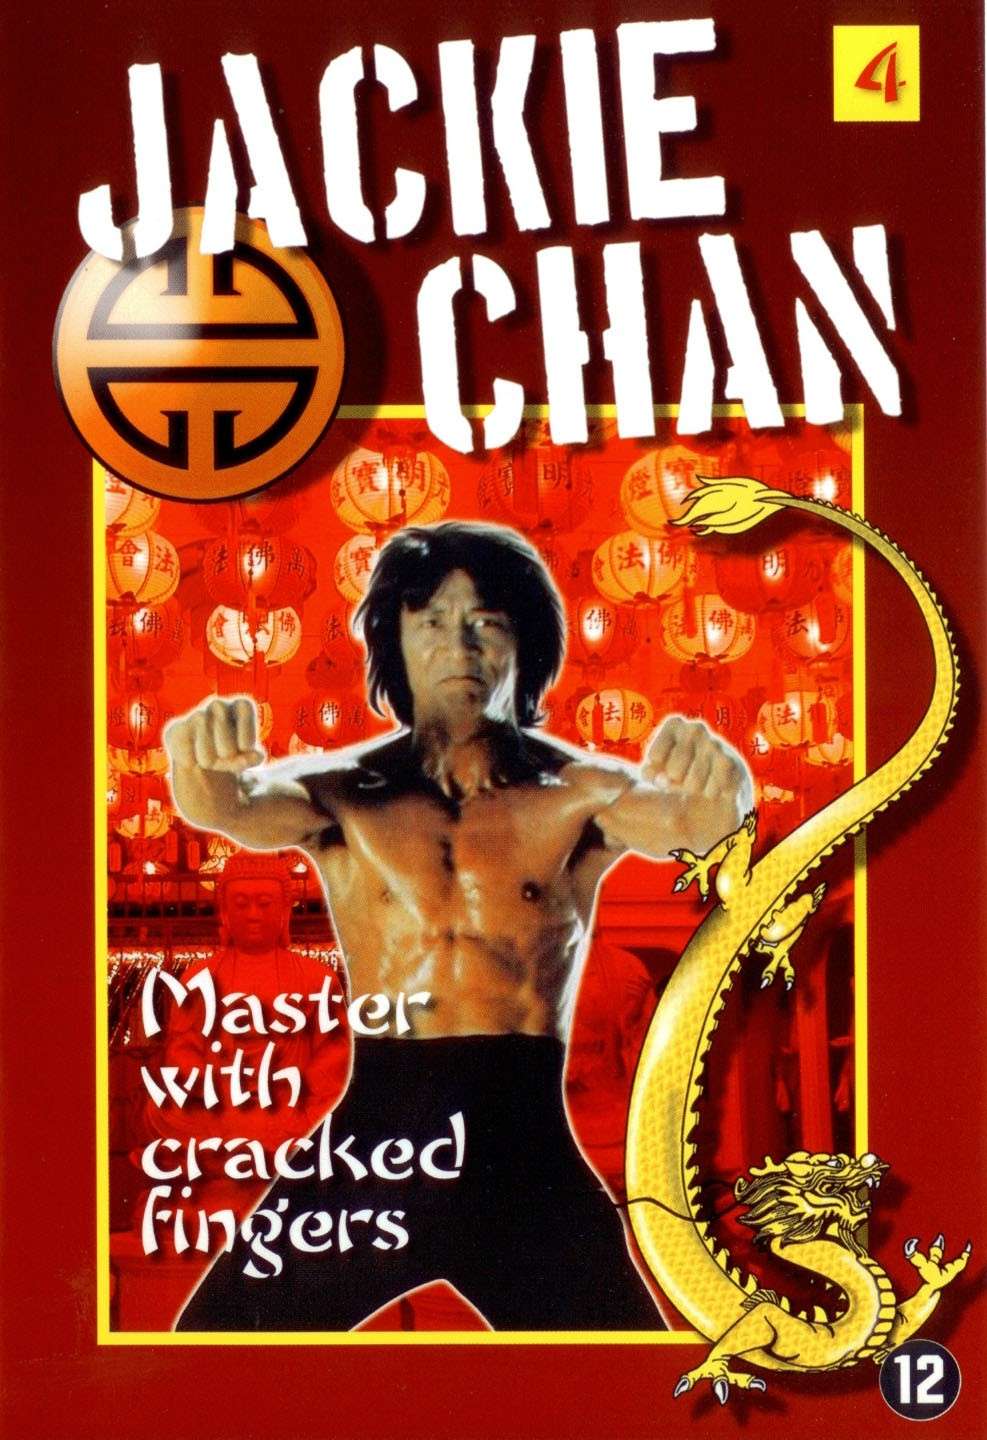 فيلم الأكشن والقتال  Master with cracked fingers 1971  كامل ومترجم وبنسخة DVD RIB وعلي سيرفر اسرع من الميديا فاير Master10